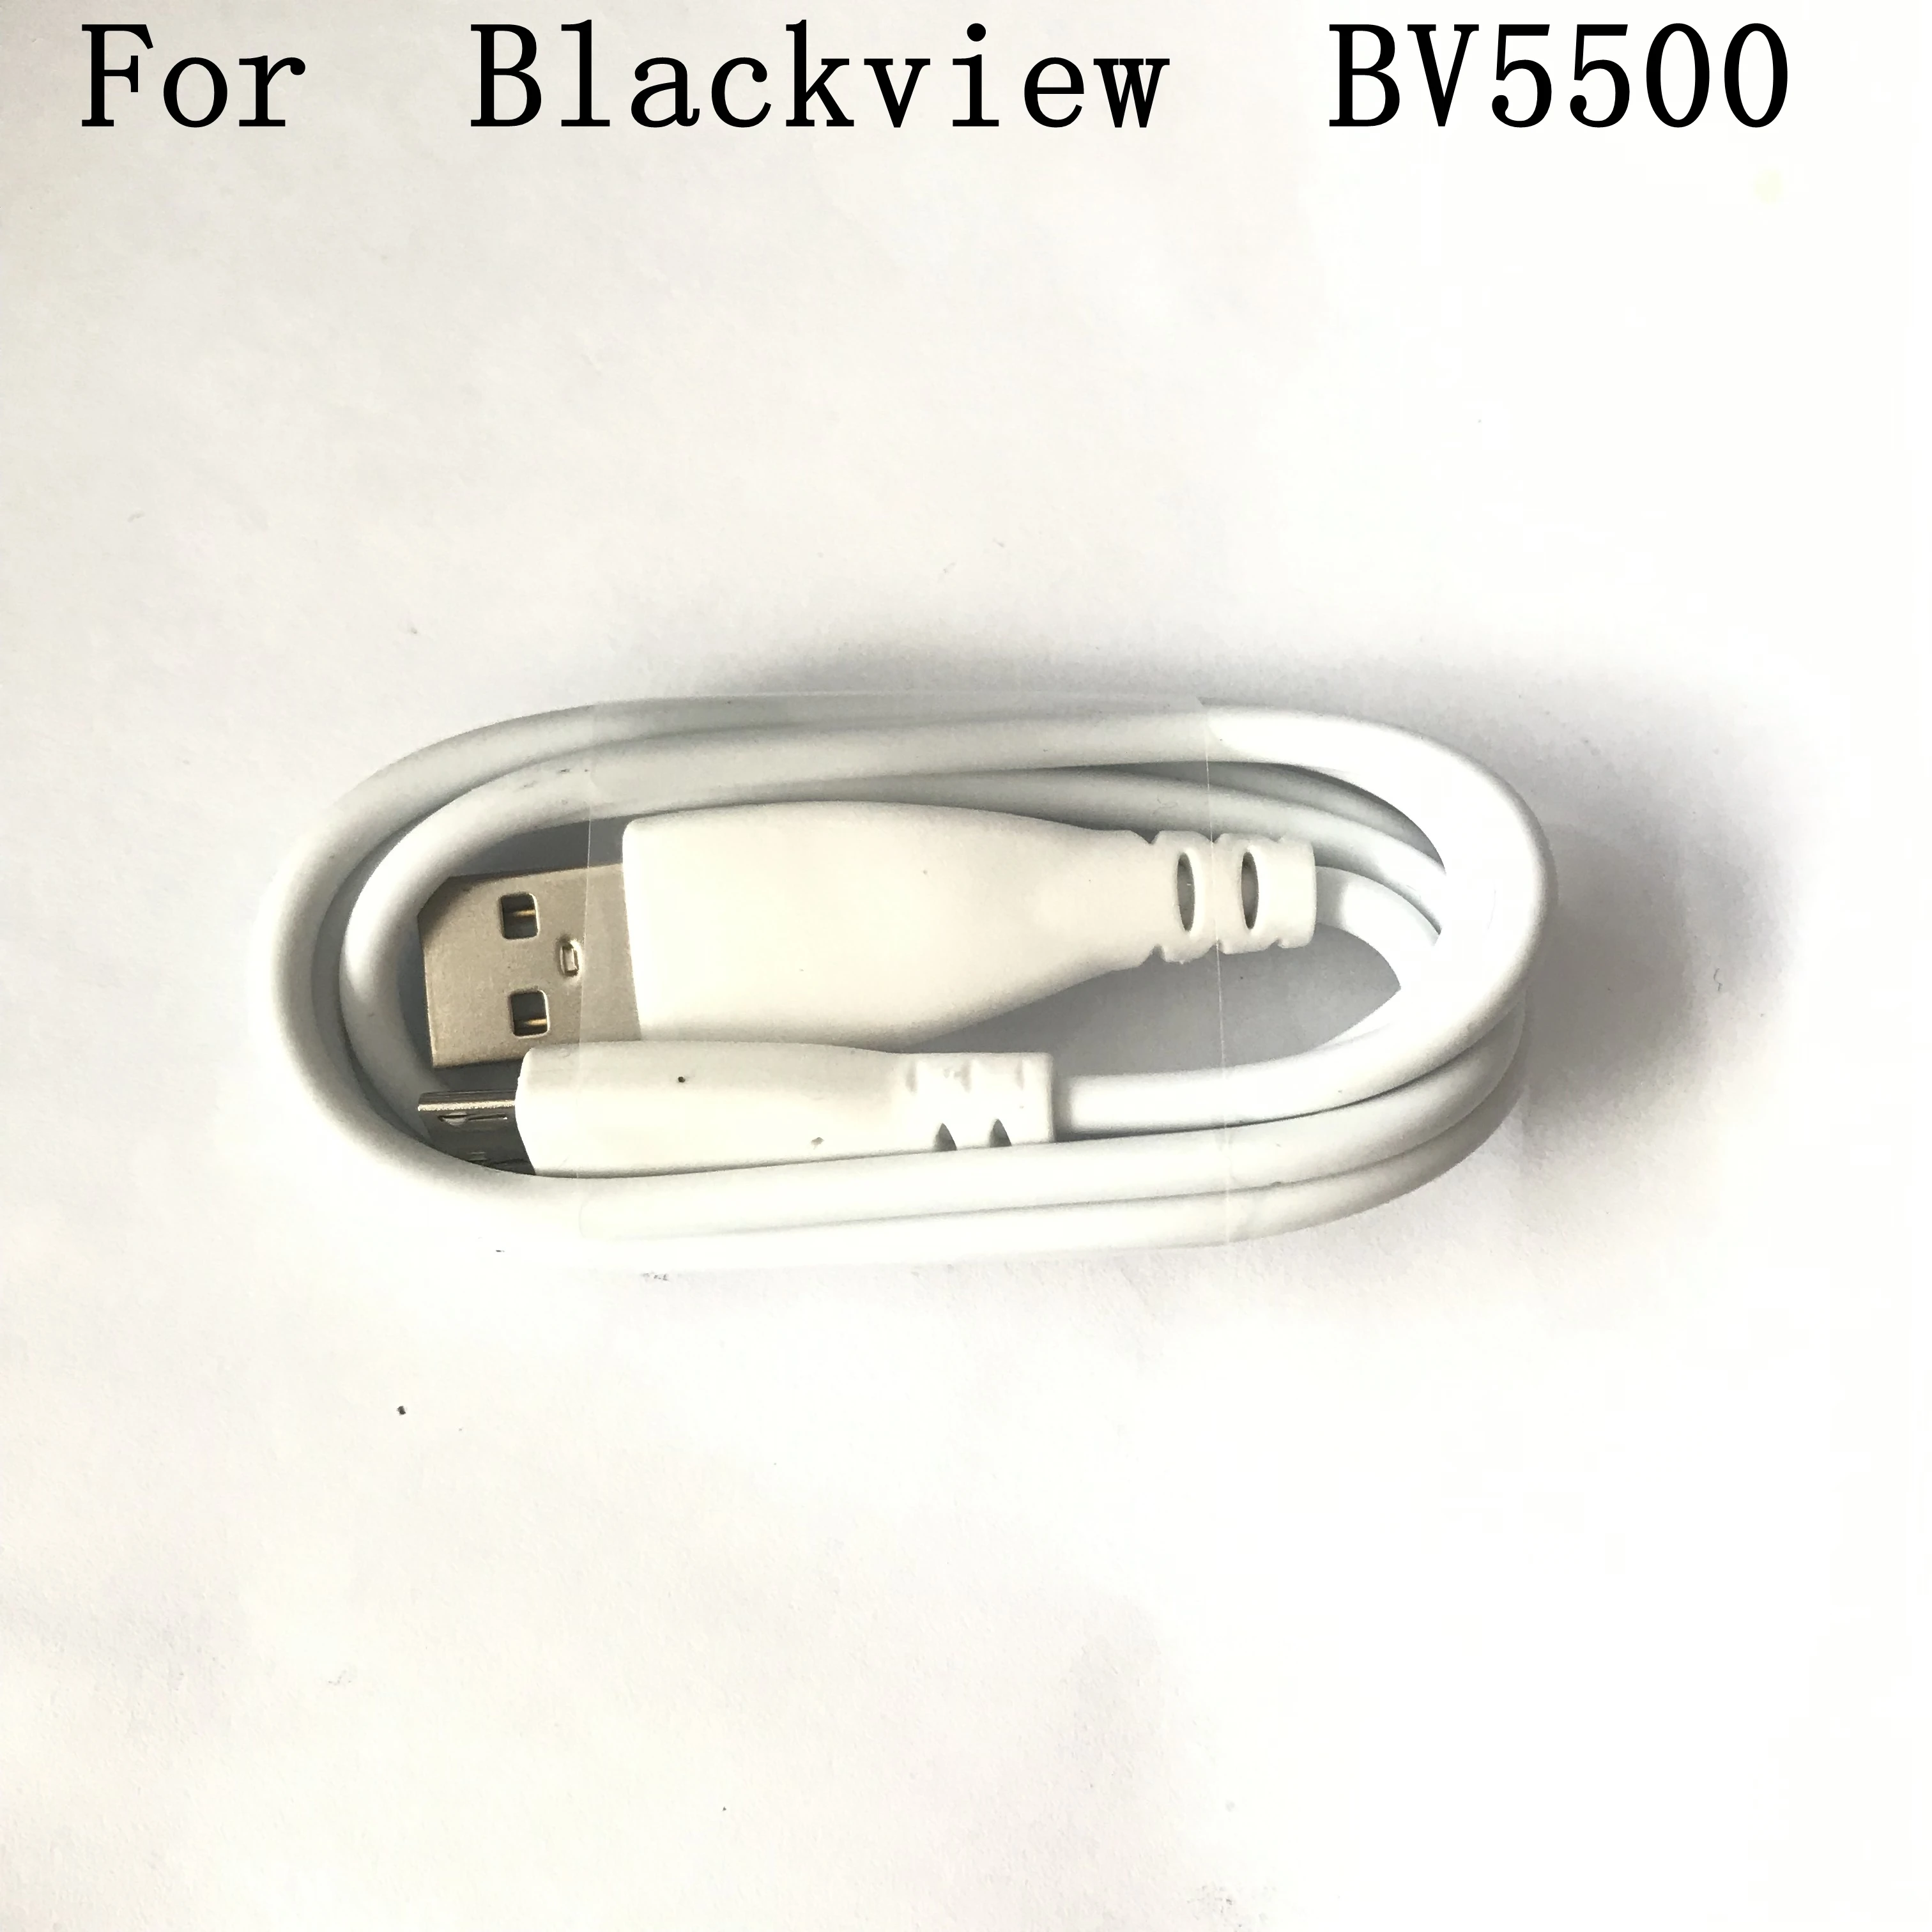 Blackview BV5500 Nieuwe Originele USB Kabel USB Lijn Voor Blackview BV5500 MTK6580P 5.5 inch Smartphone